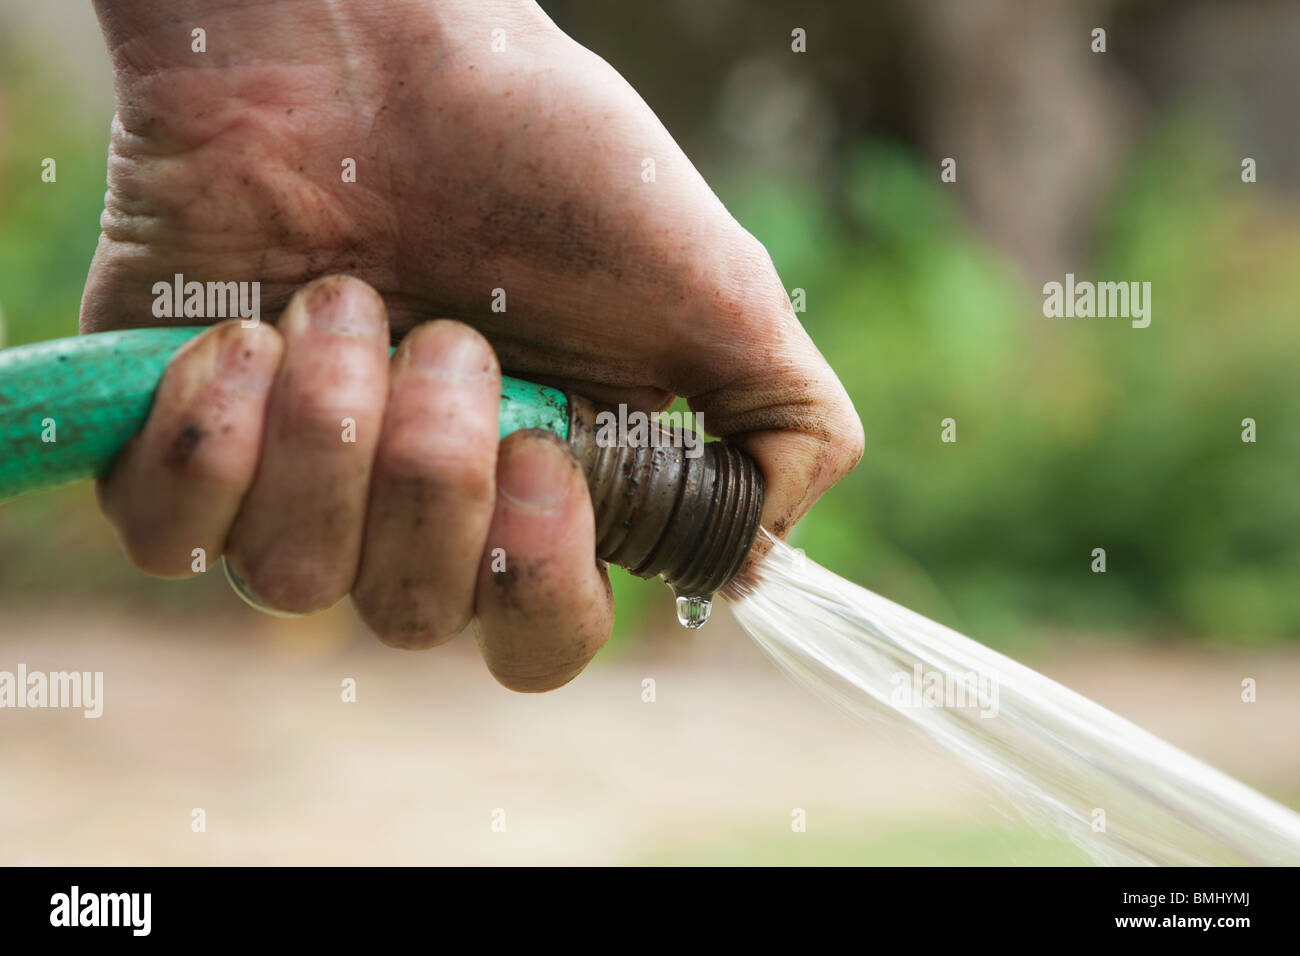 La mano que sujeta la manguera Fotografía de stock - Alamy